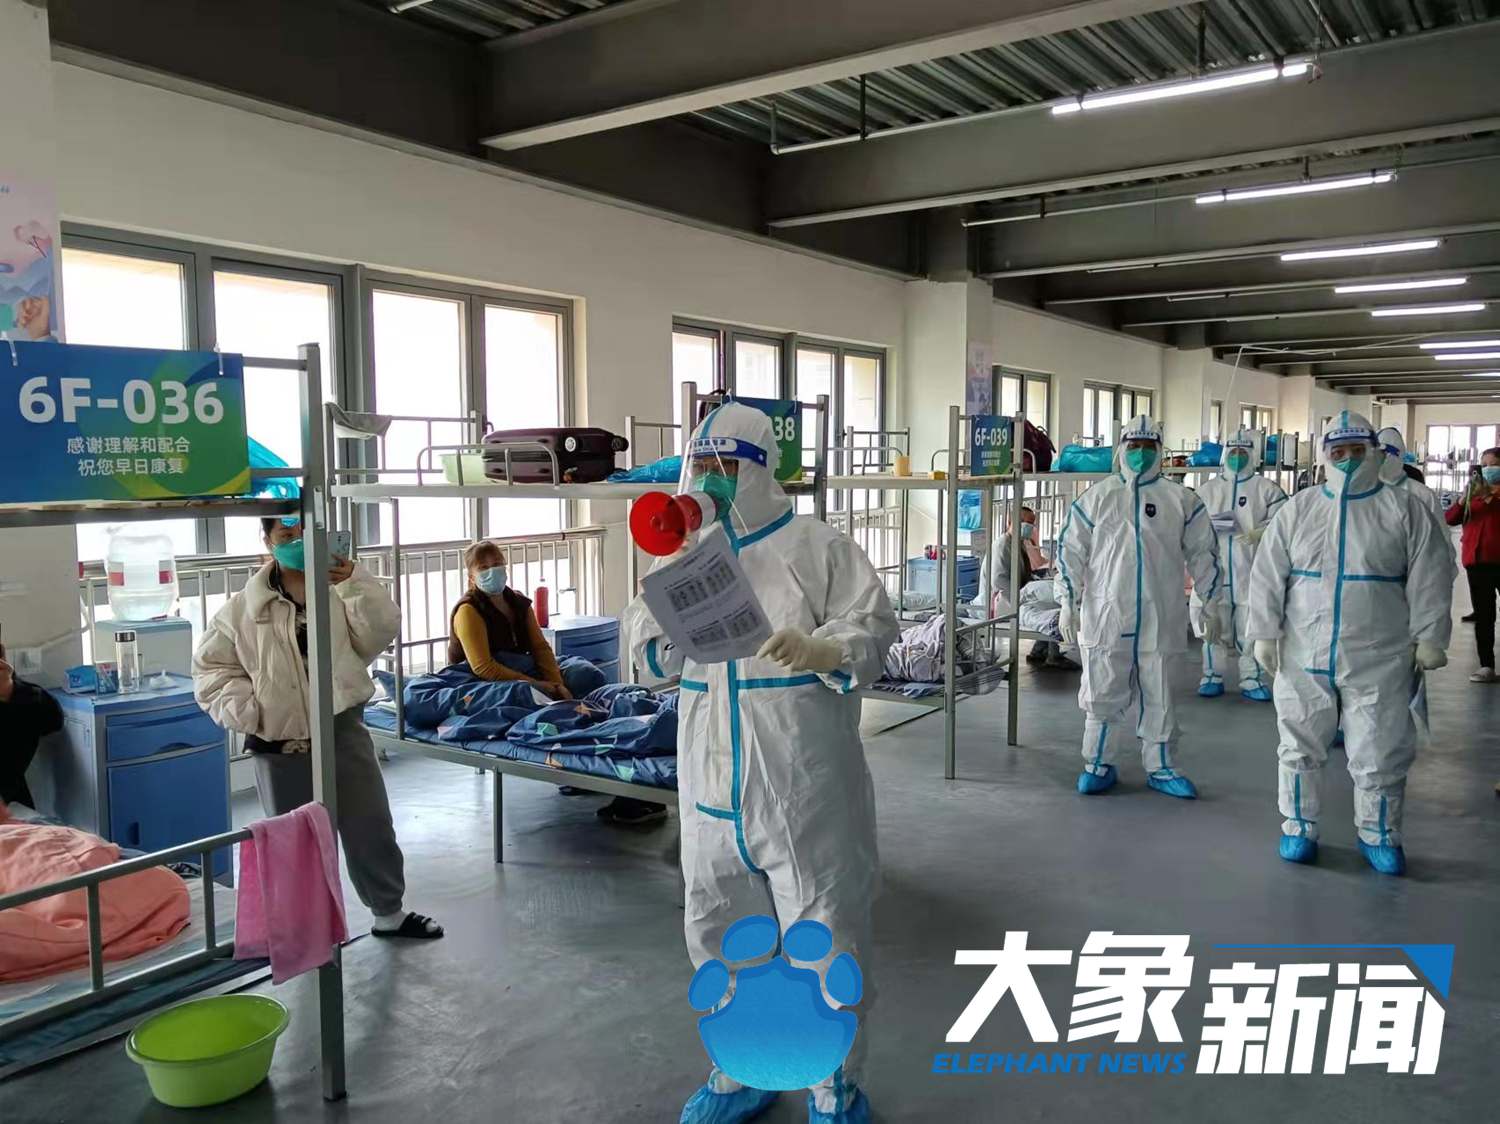 上海方舱医院内河南医疗队带领患者“解锁”太极拳八段锦